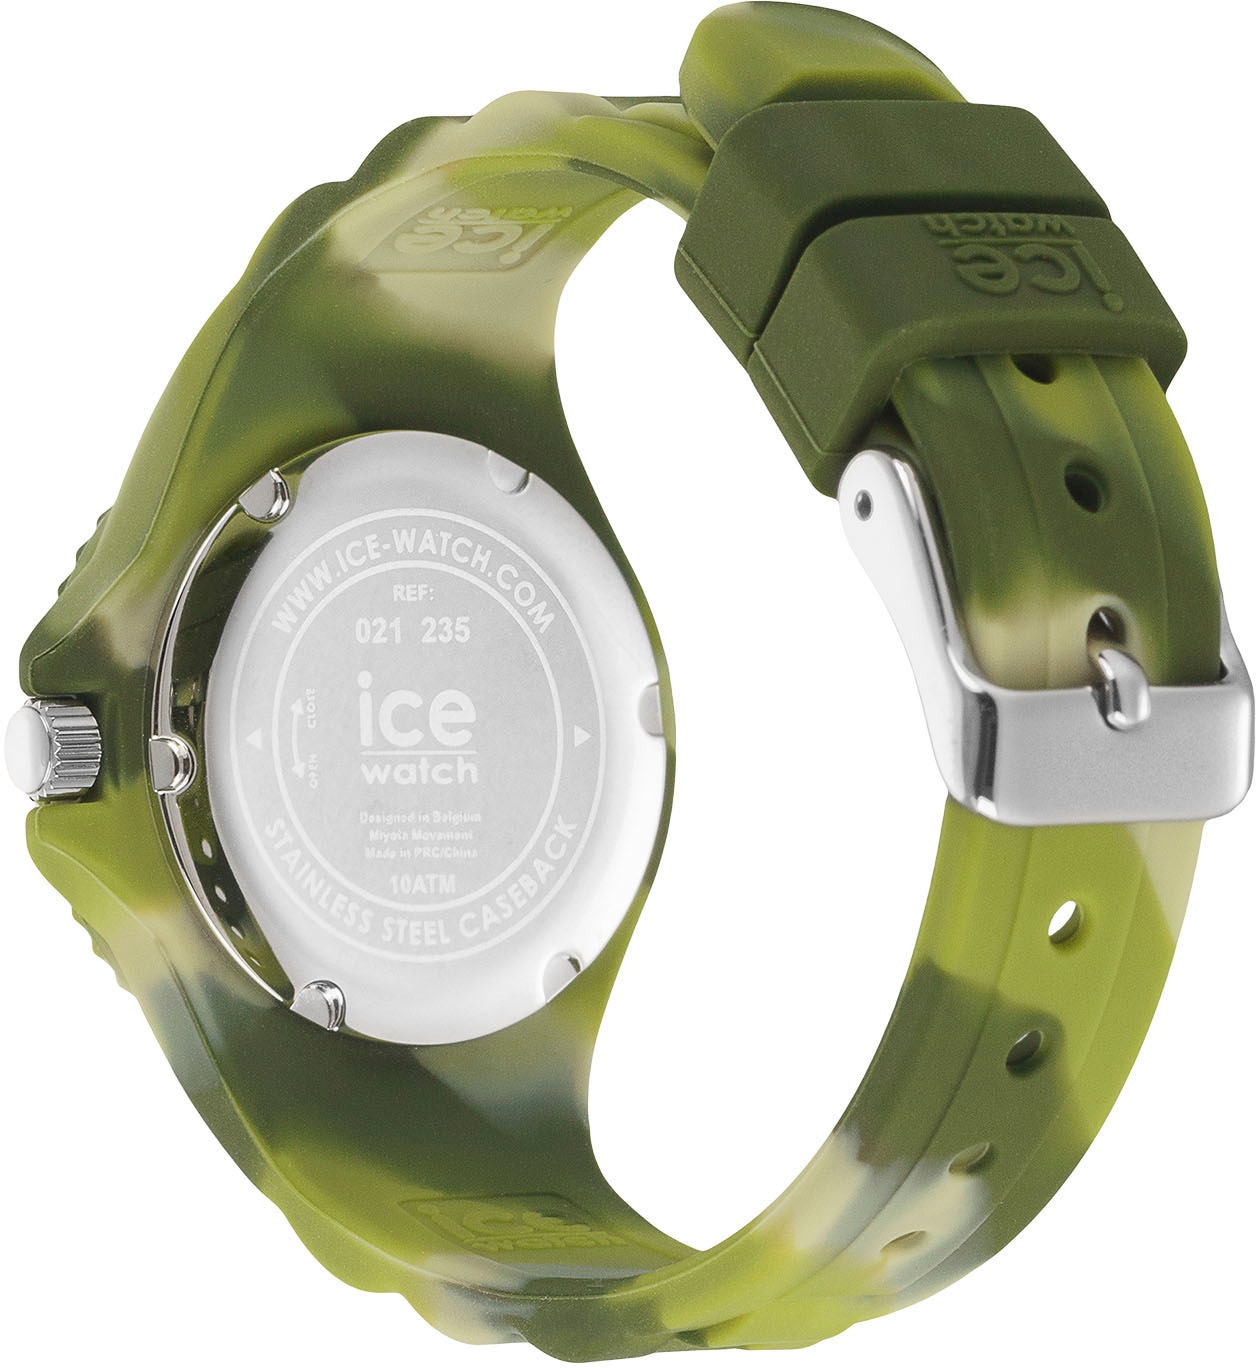 auch - OTTO and Extra-Small Online 021235«, Green 3H, »ICE ideal - Shop shades tie Quarzuhr ice-watch - im dye Geschenk als